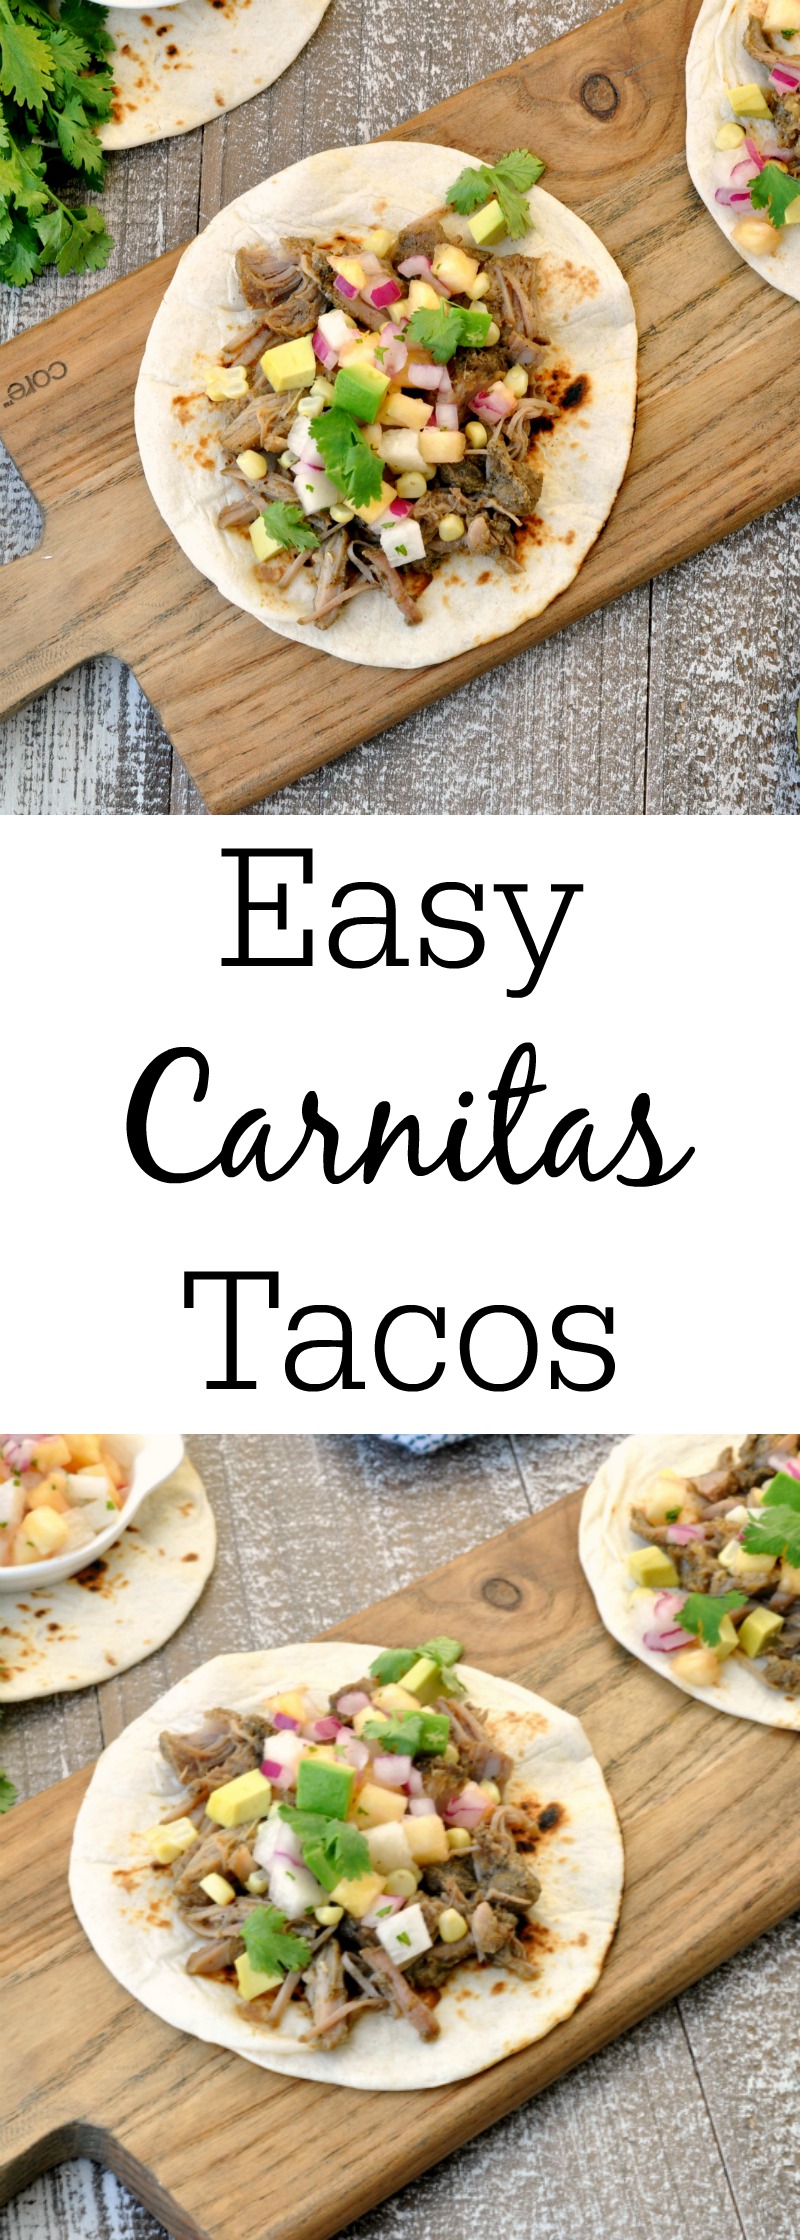 Easy Carnitas Tacos